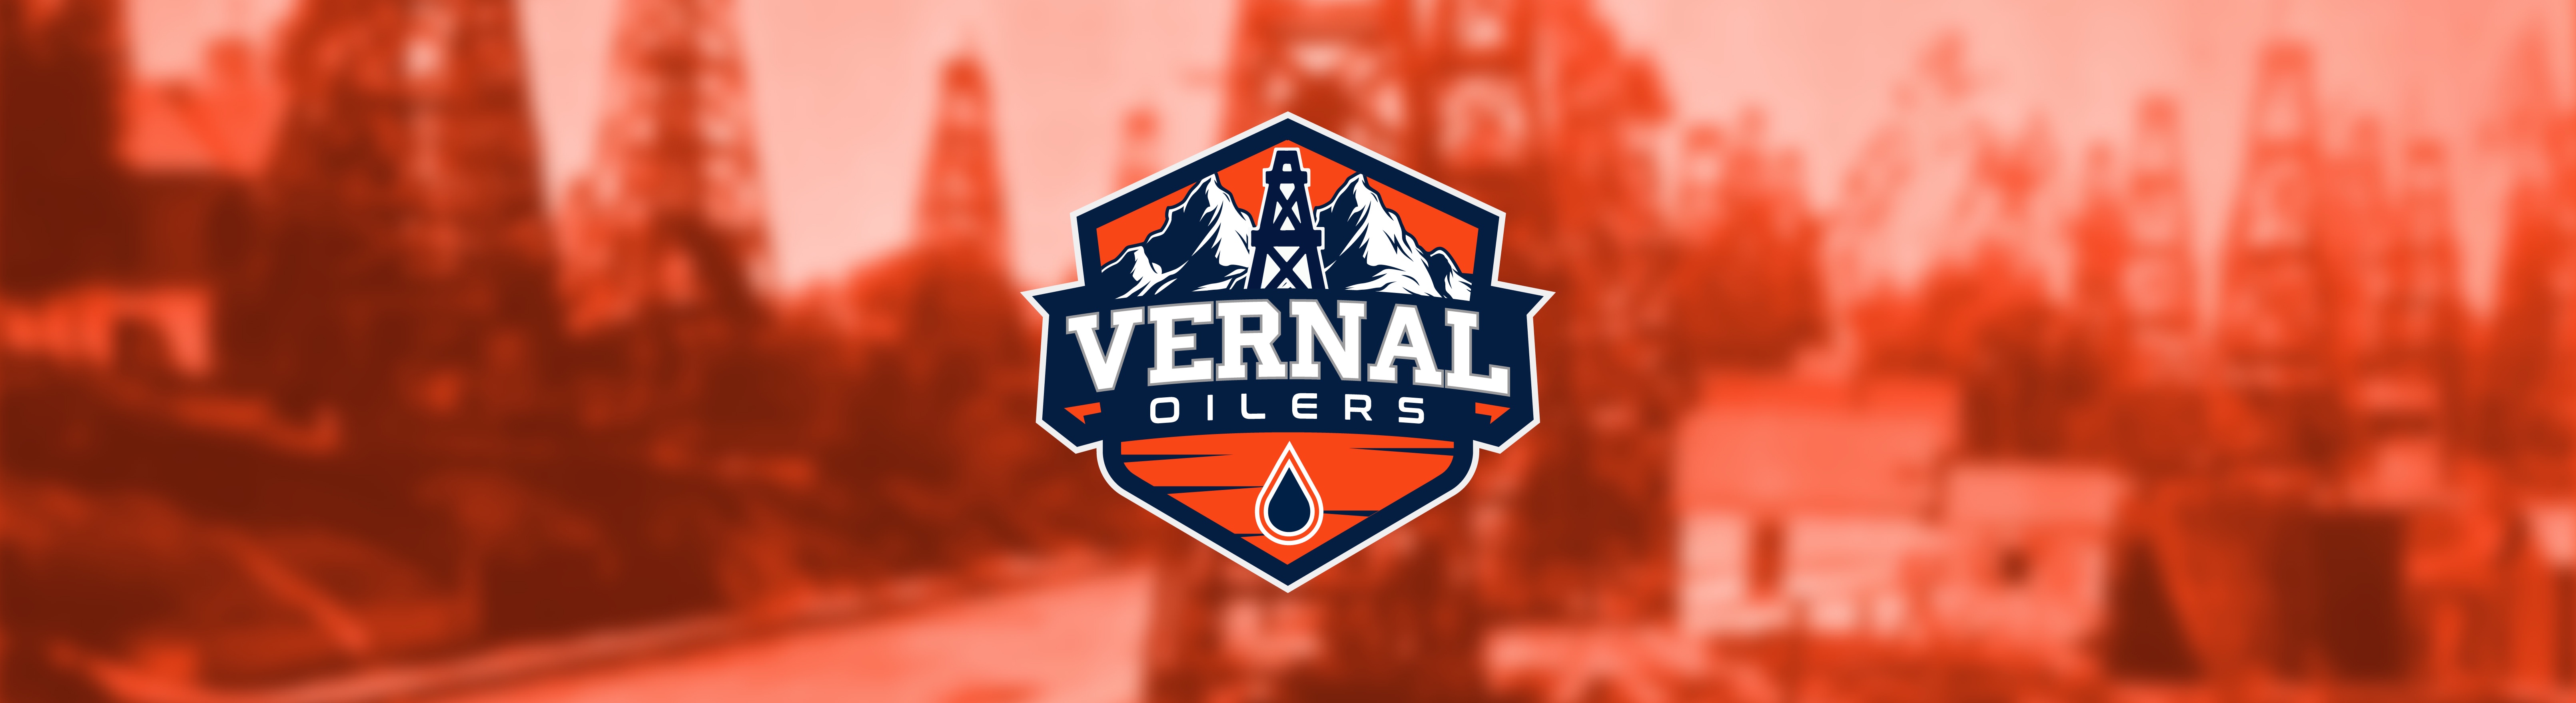 Vernal Oilers LLC